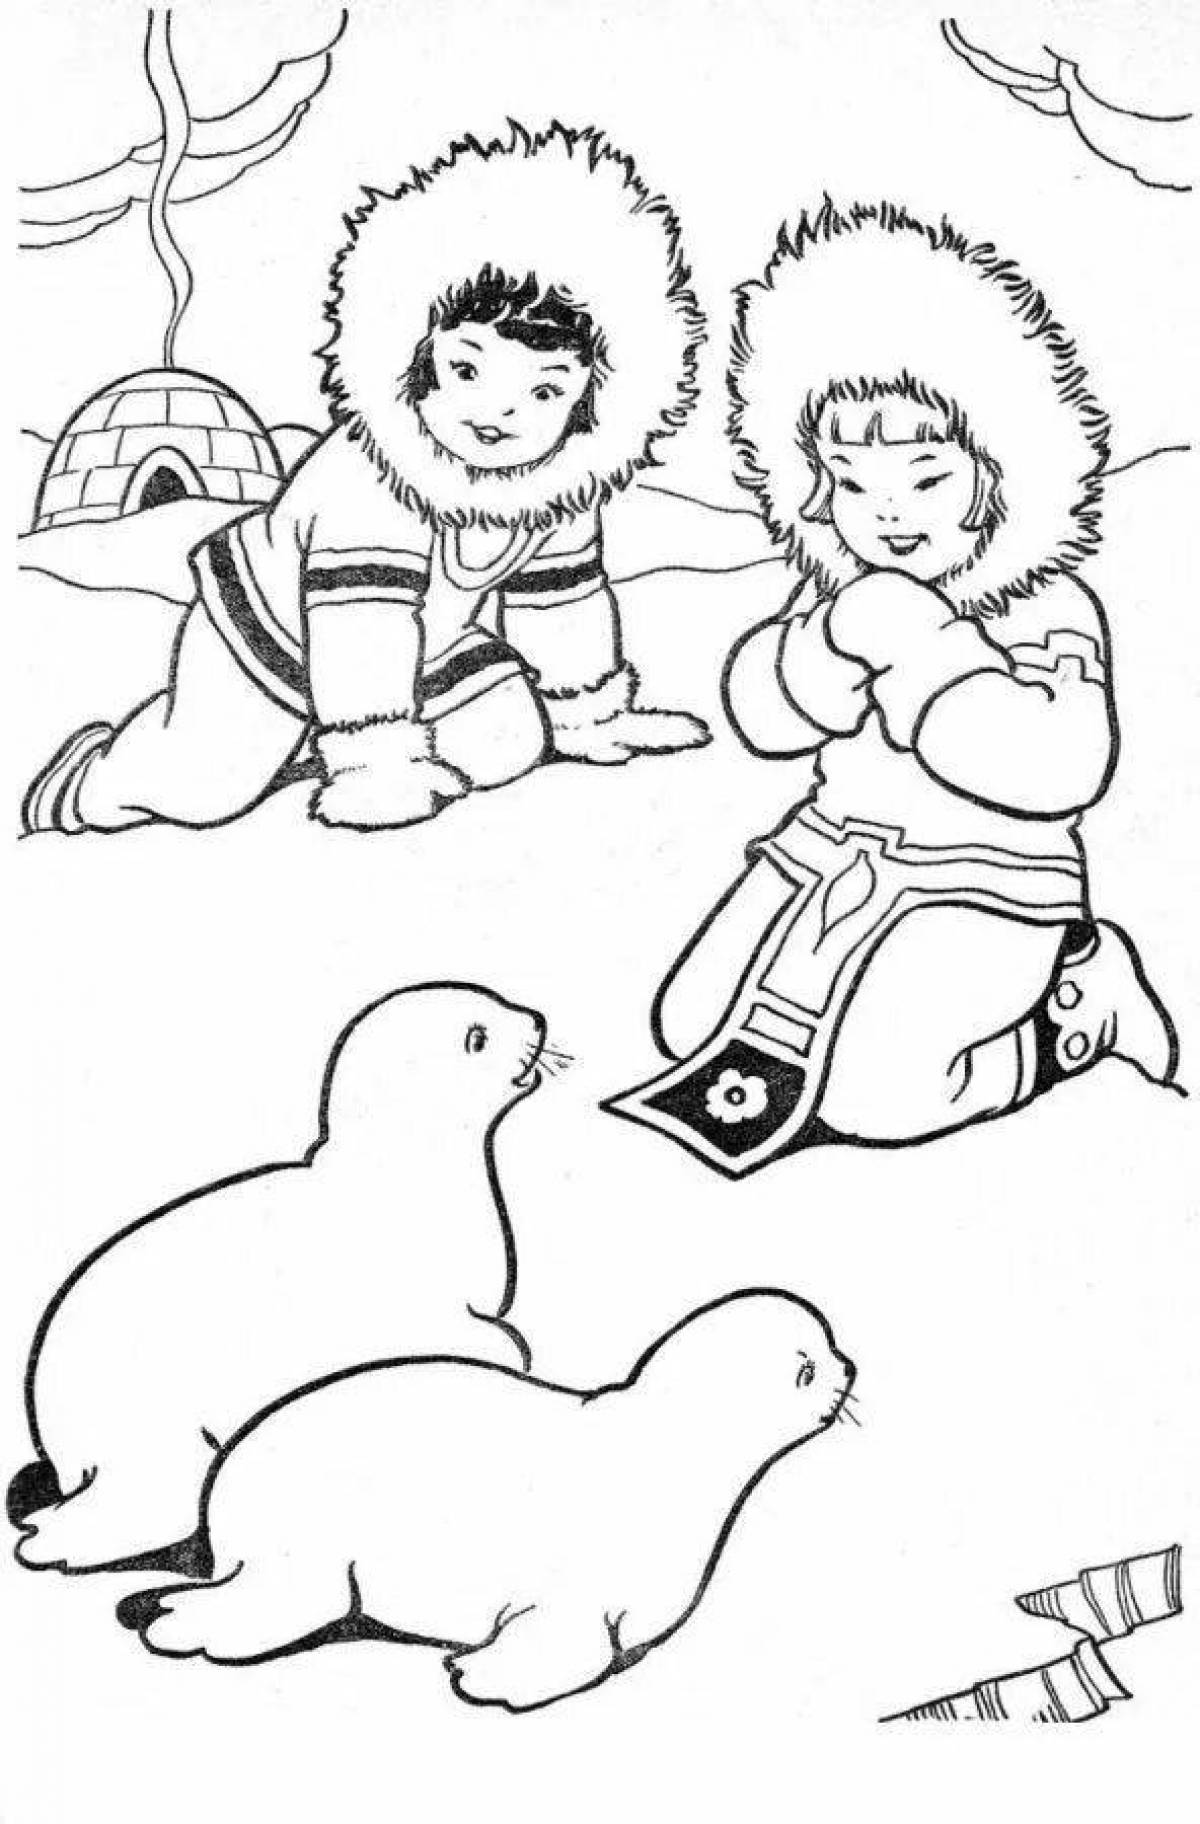 Delightful eskimo coloring book